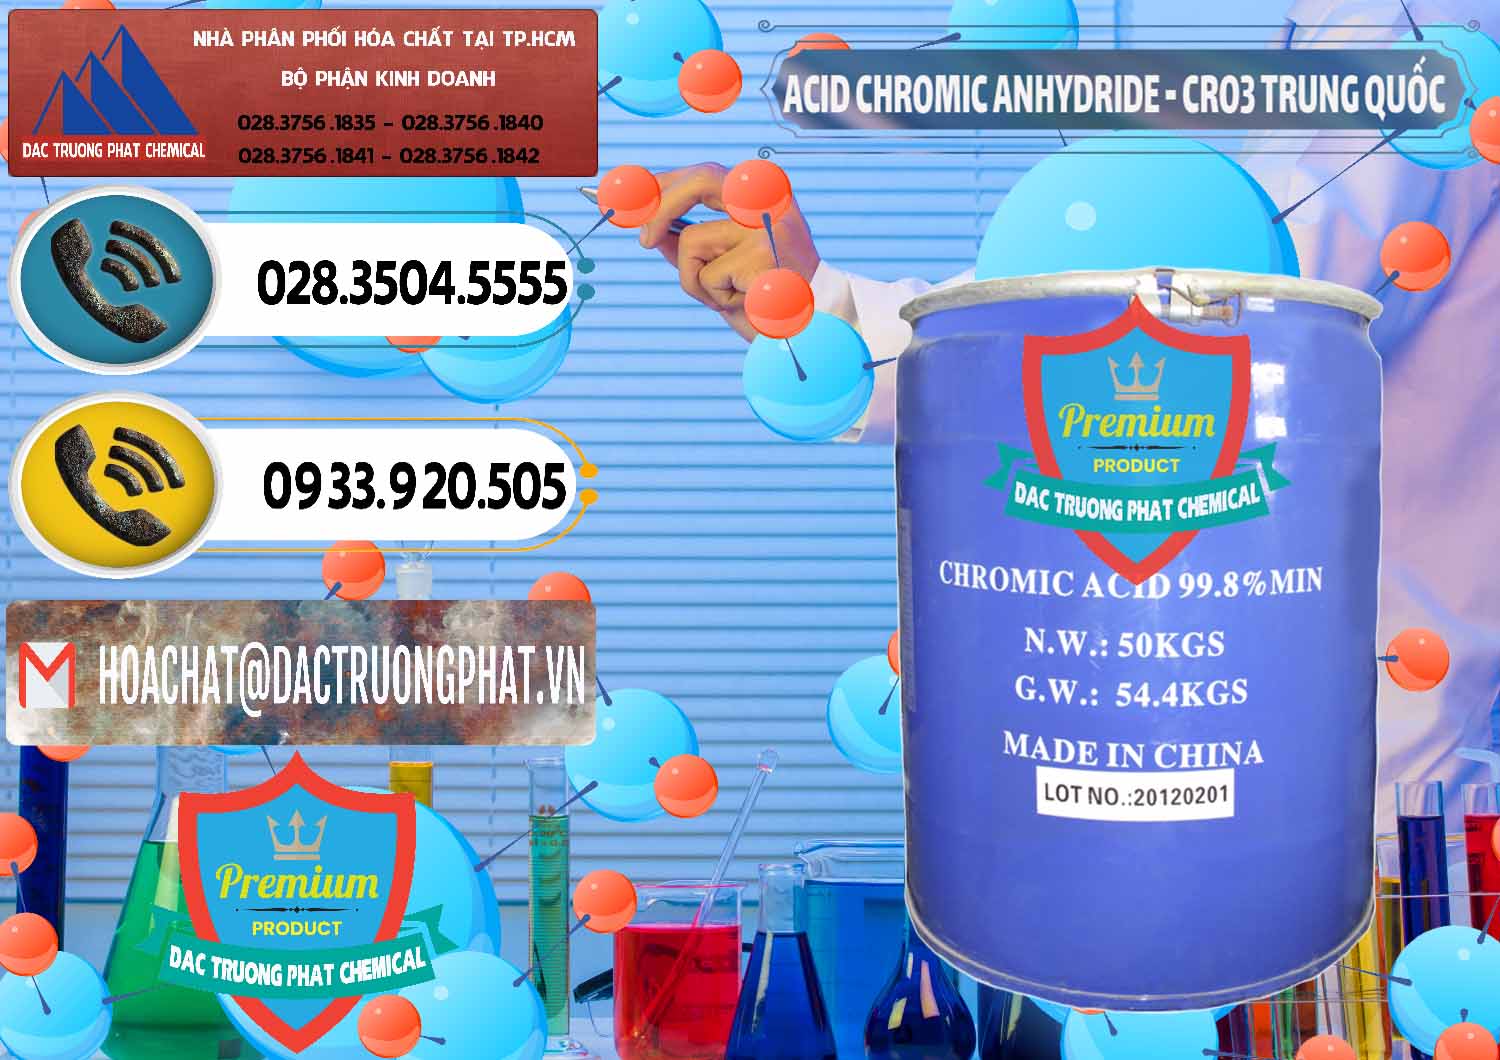 Công ty chuyên kinh doanh _ bán Acid Chromic Anhydride - Cromic CRO3 Trung Quốc China - 0007 - Đơn vị chuyên cung ứng - phân phối hóa chất tại TP.HCM - hoachatdetnhuom.vn